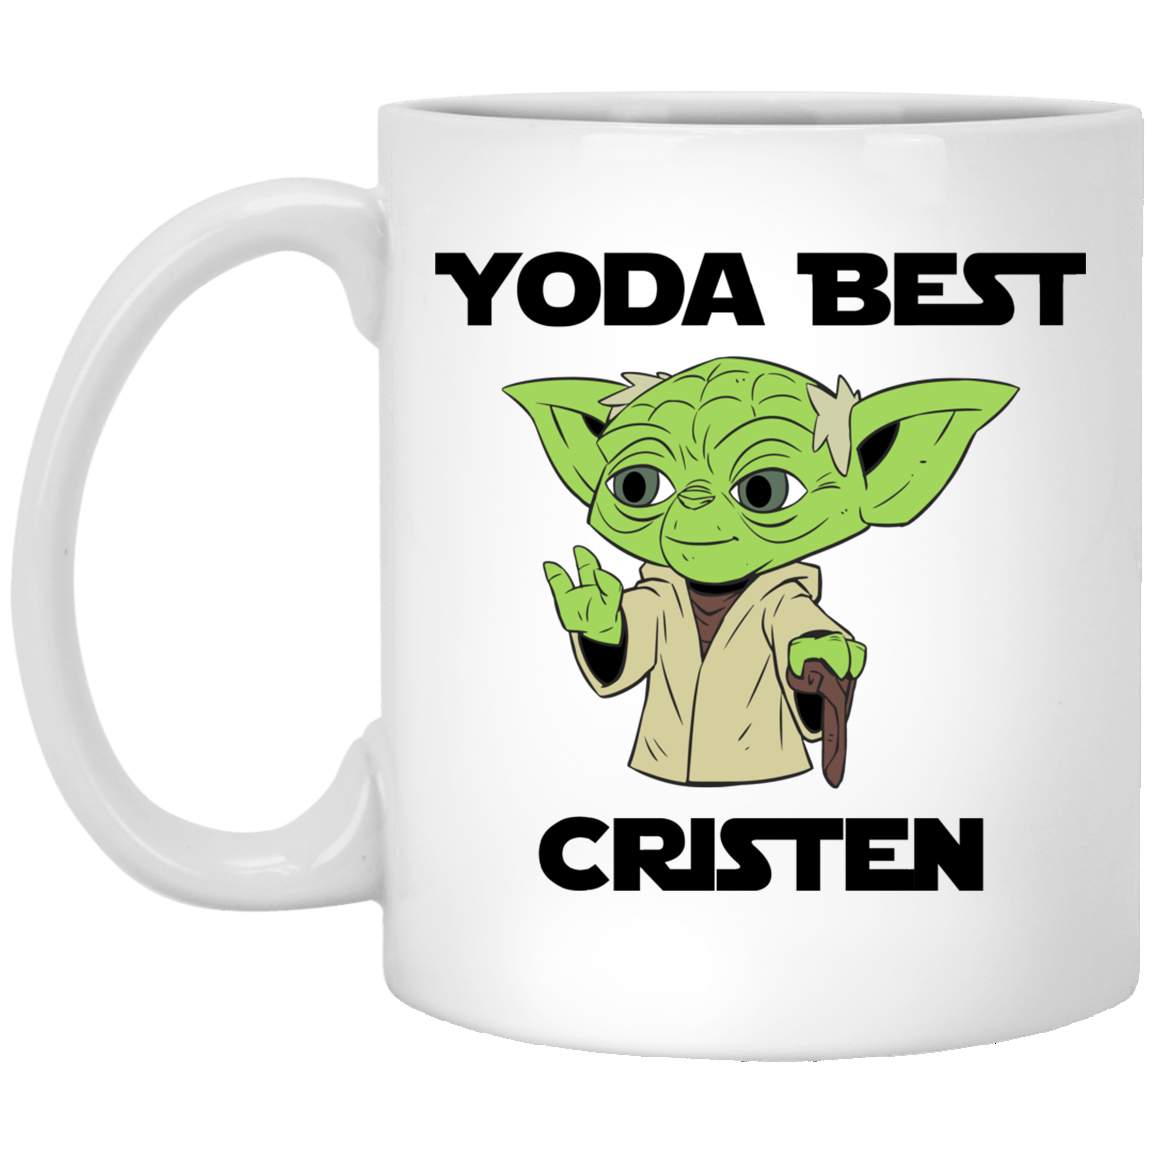 Yoda Best Cristen Mug